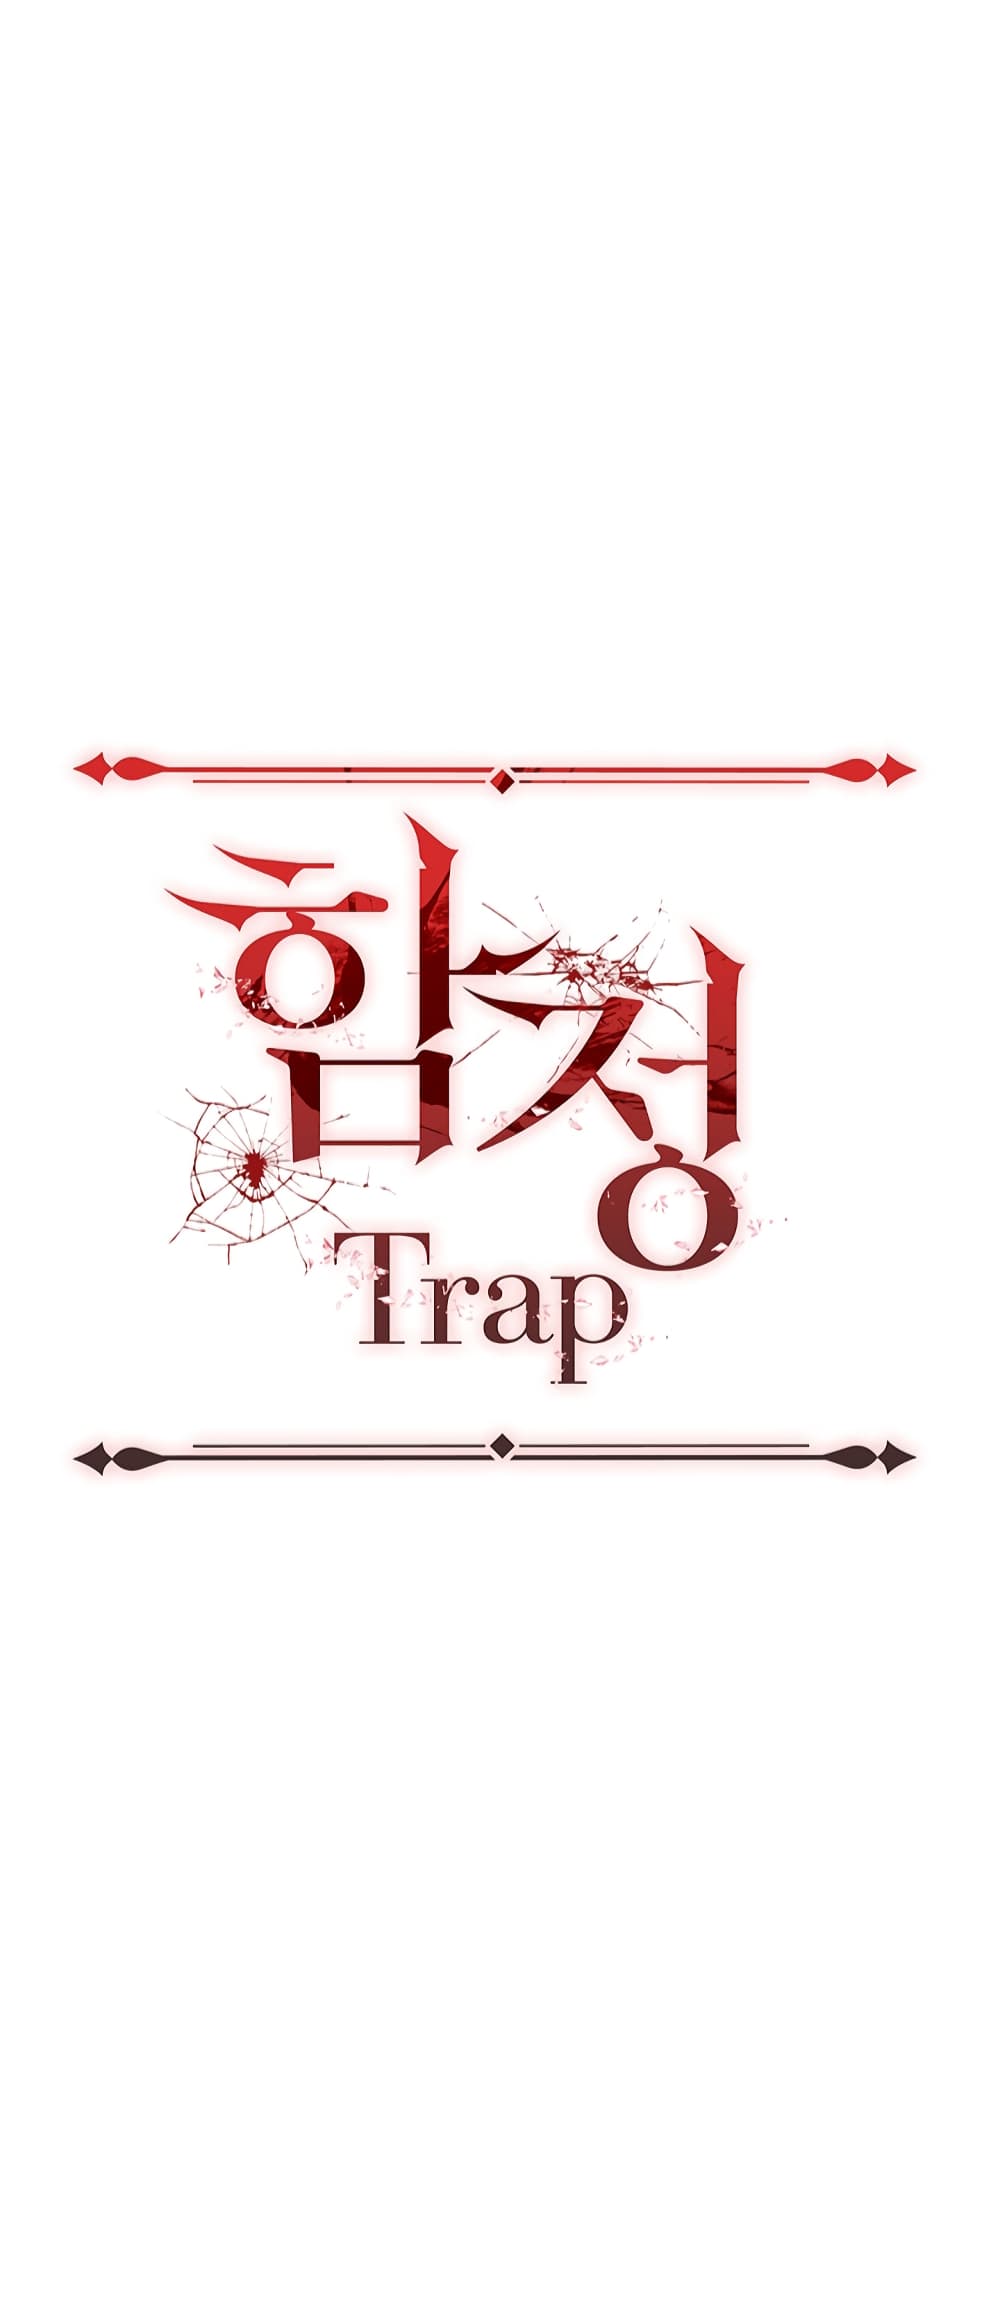 Trap 1 (68)